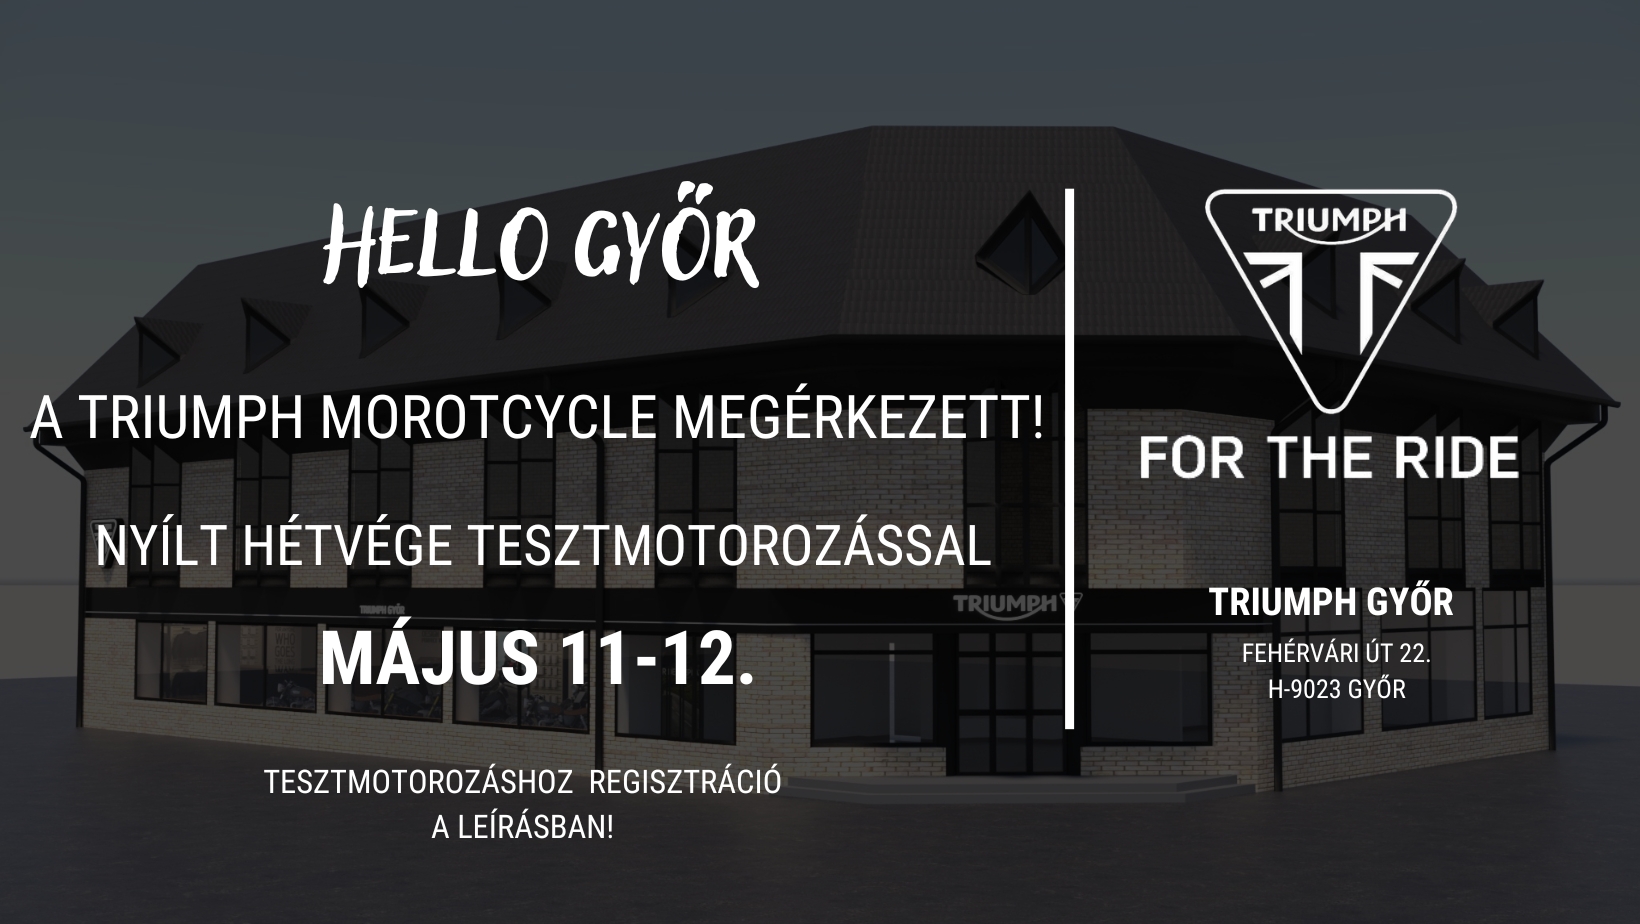 Triumph Győr motorszalon nyílt hétvége és tesztnap